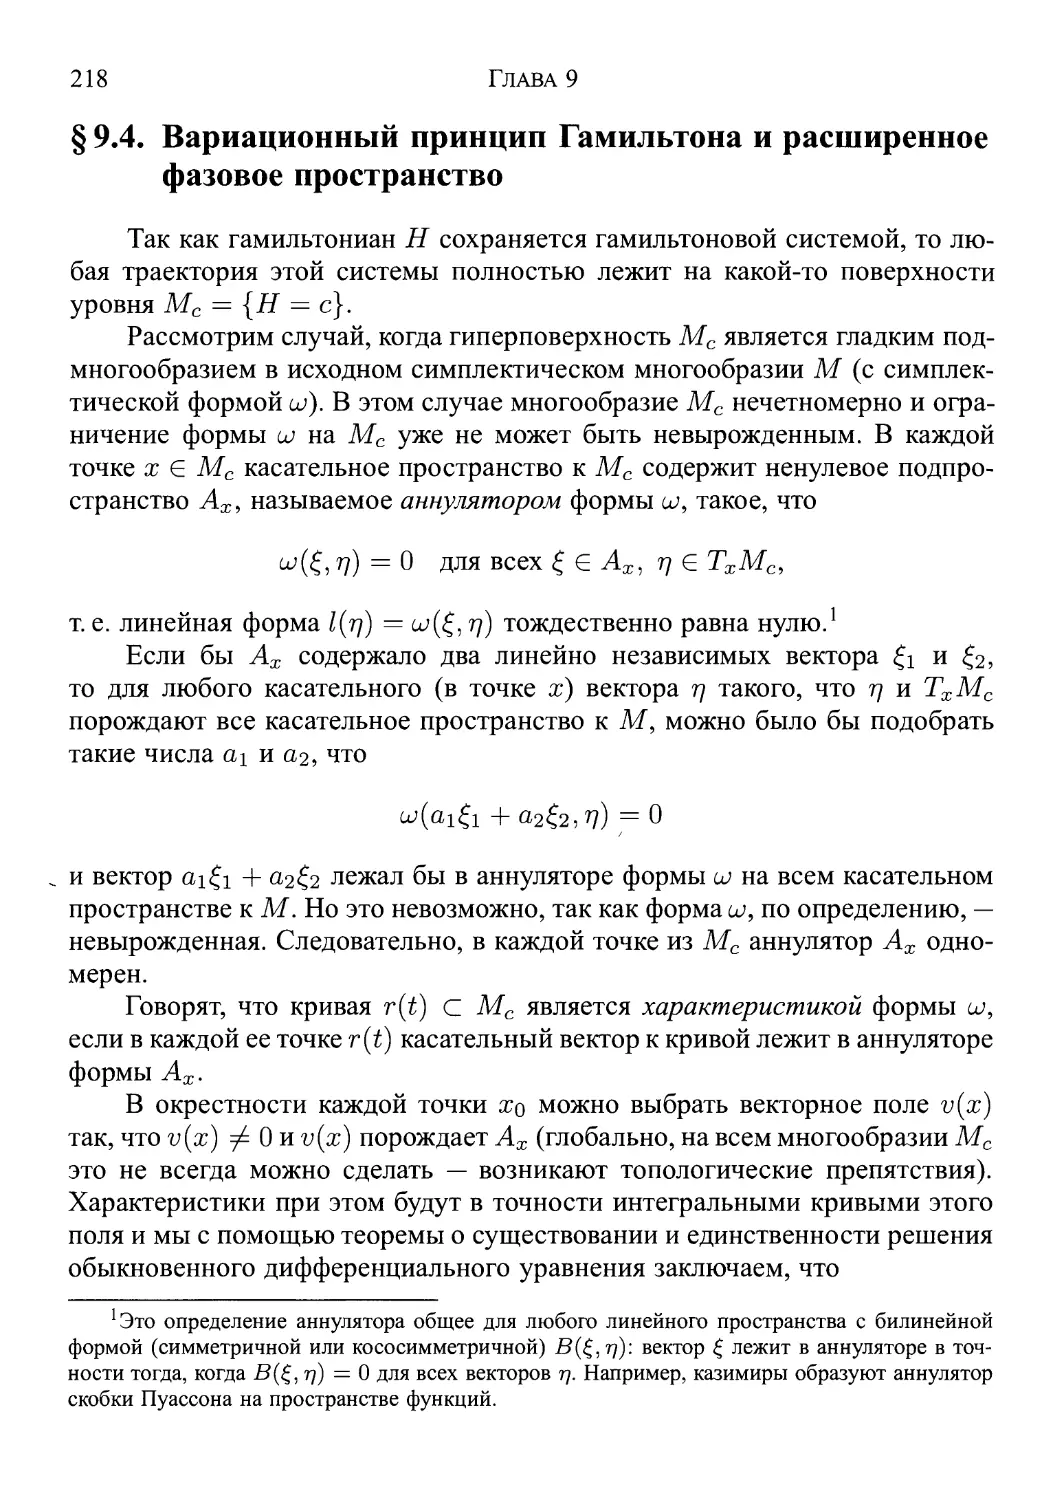 § 9.4. Вариационный принцип Гамильтона и расширенное фазовое пространство